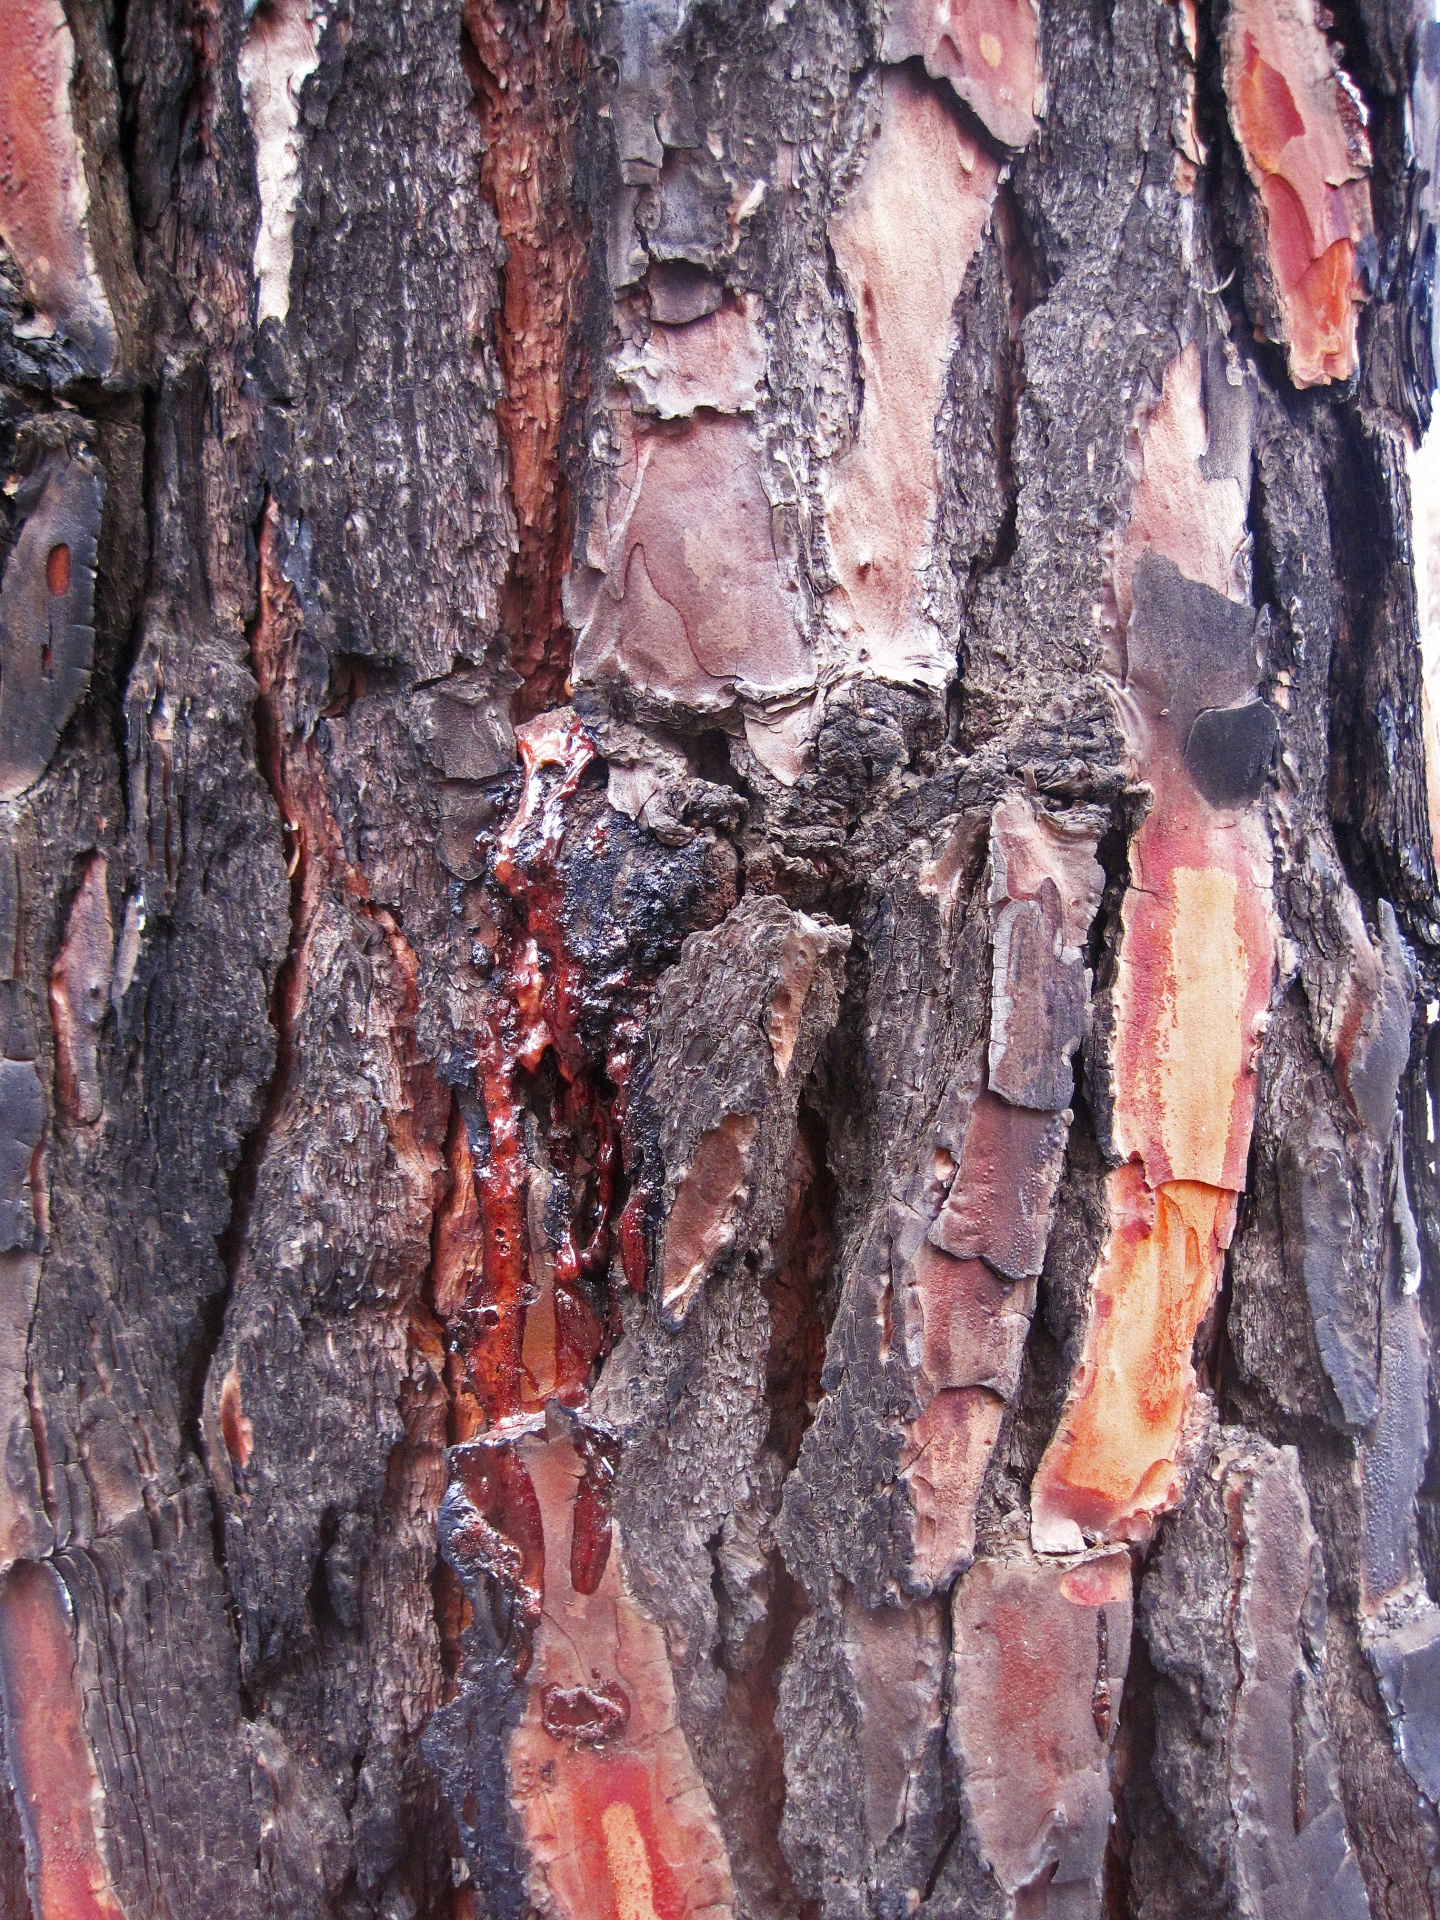 Charred Bark Of Pine Exuding Sap